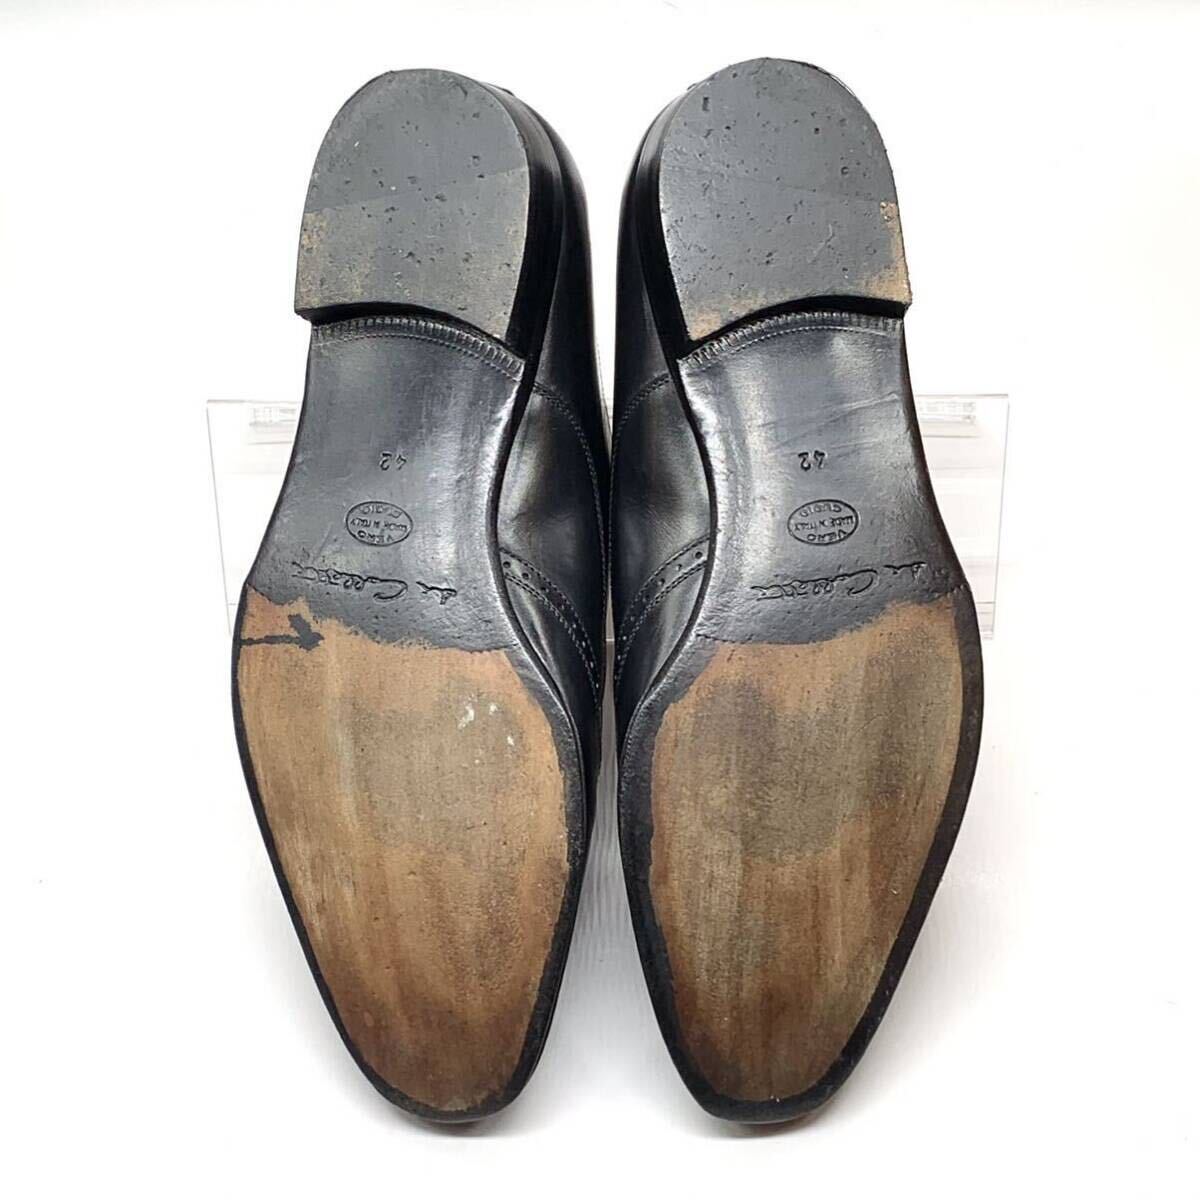 di colletti [ディコレッティ] ドレスシューズ ウイングチップ シングルモンクストラップ レザー ブラック 黒 42 27cm 革靴 イタリア製